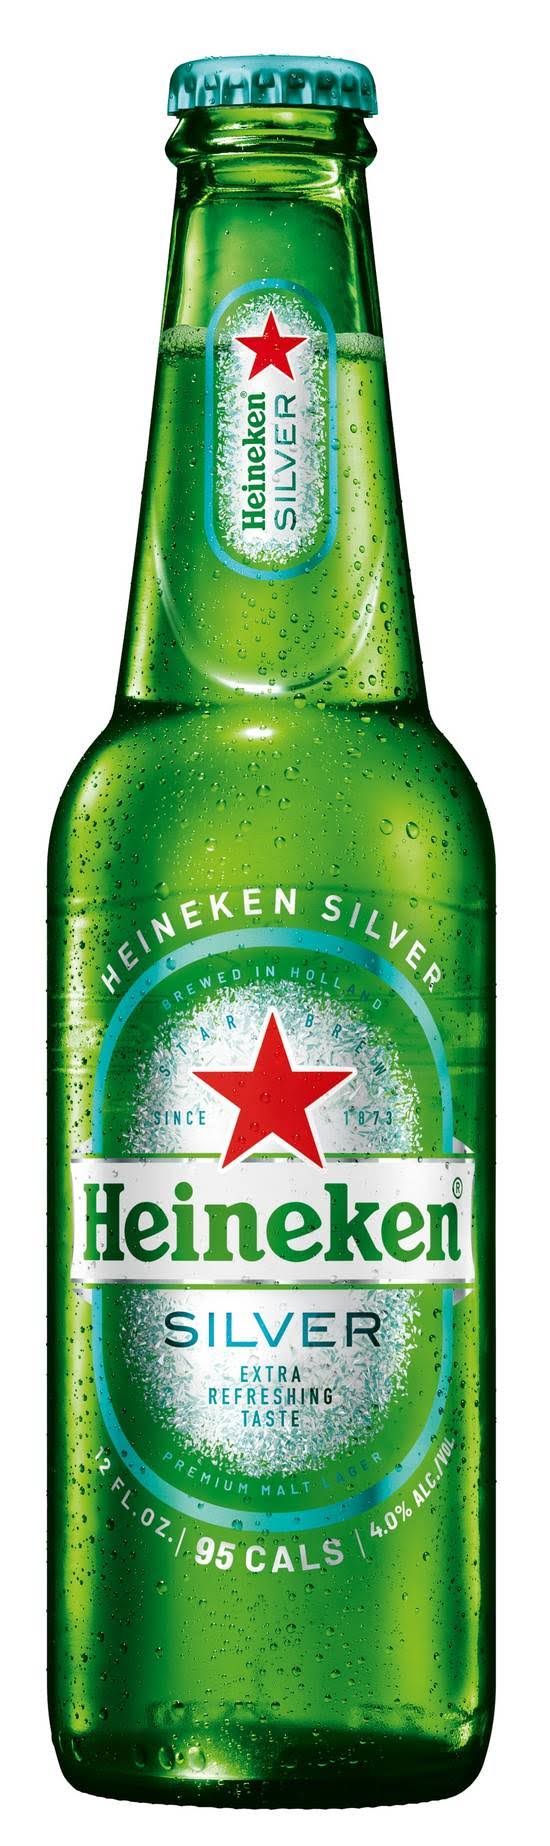 Heineken Silver Lager (6x 12oz bottles)